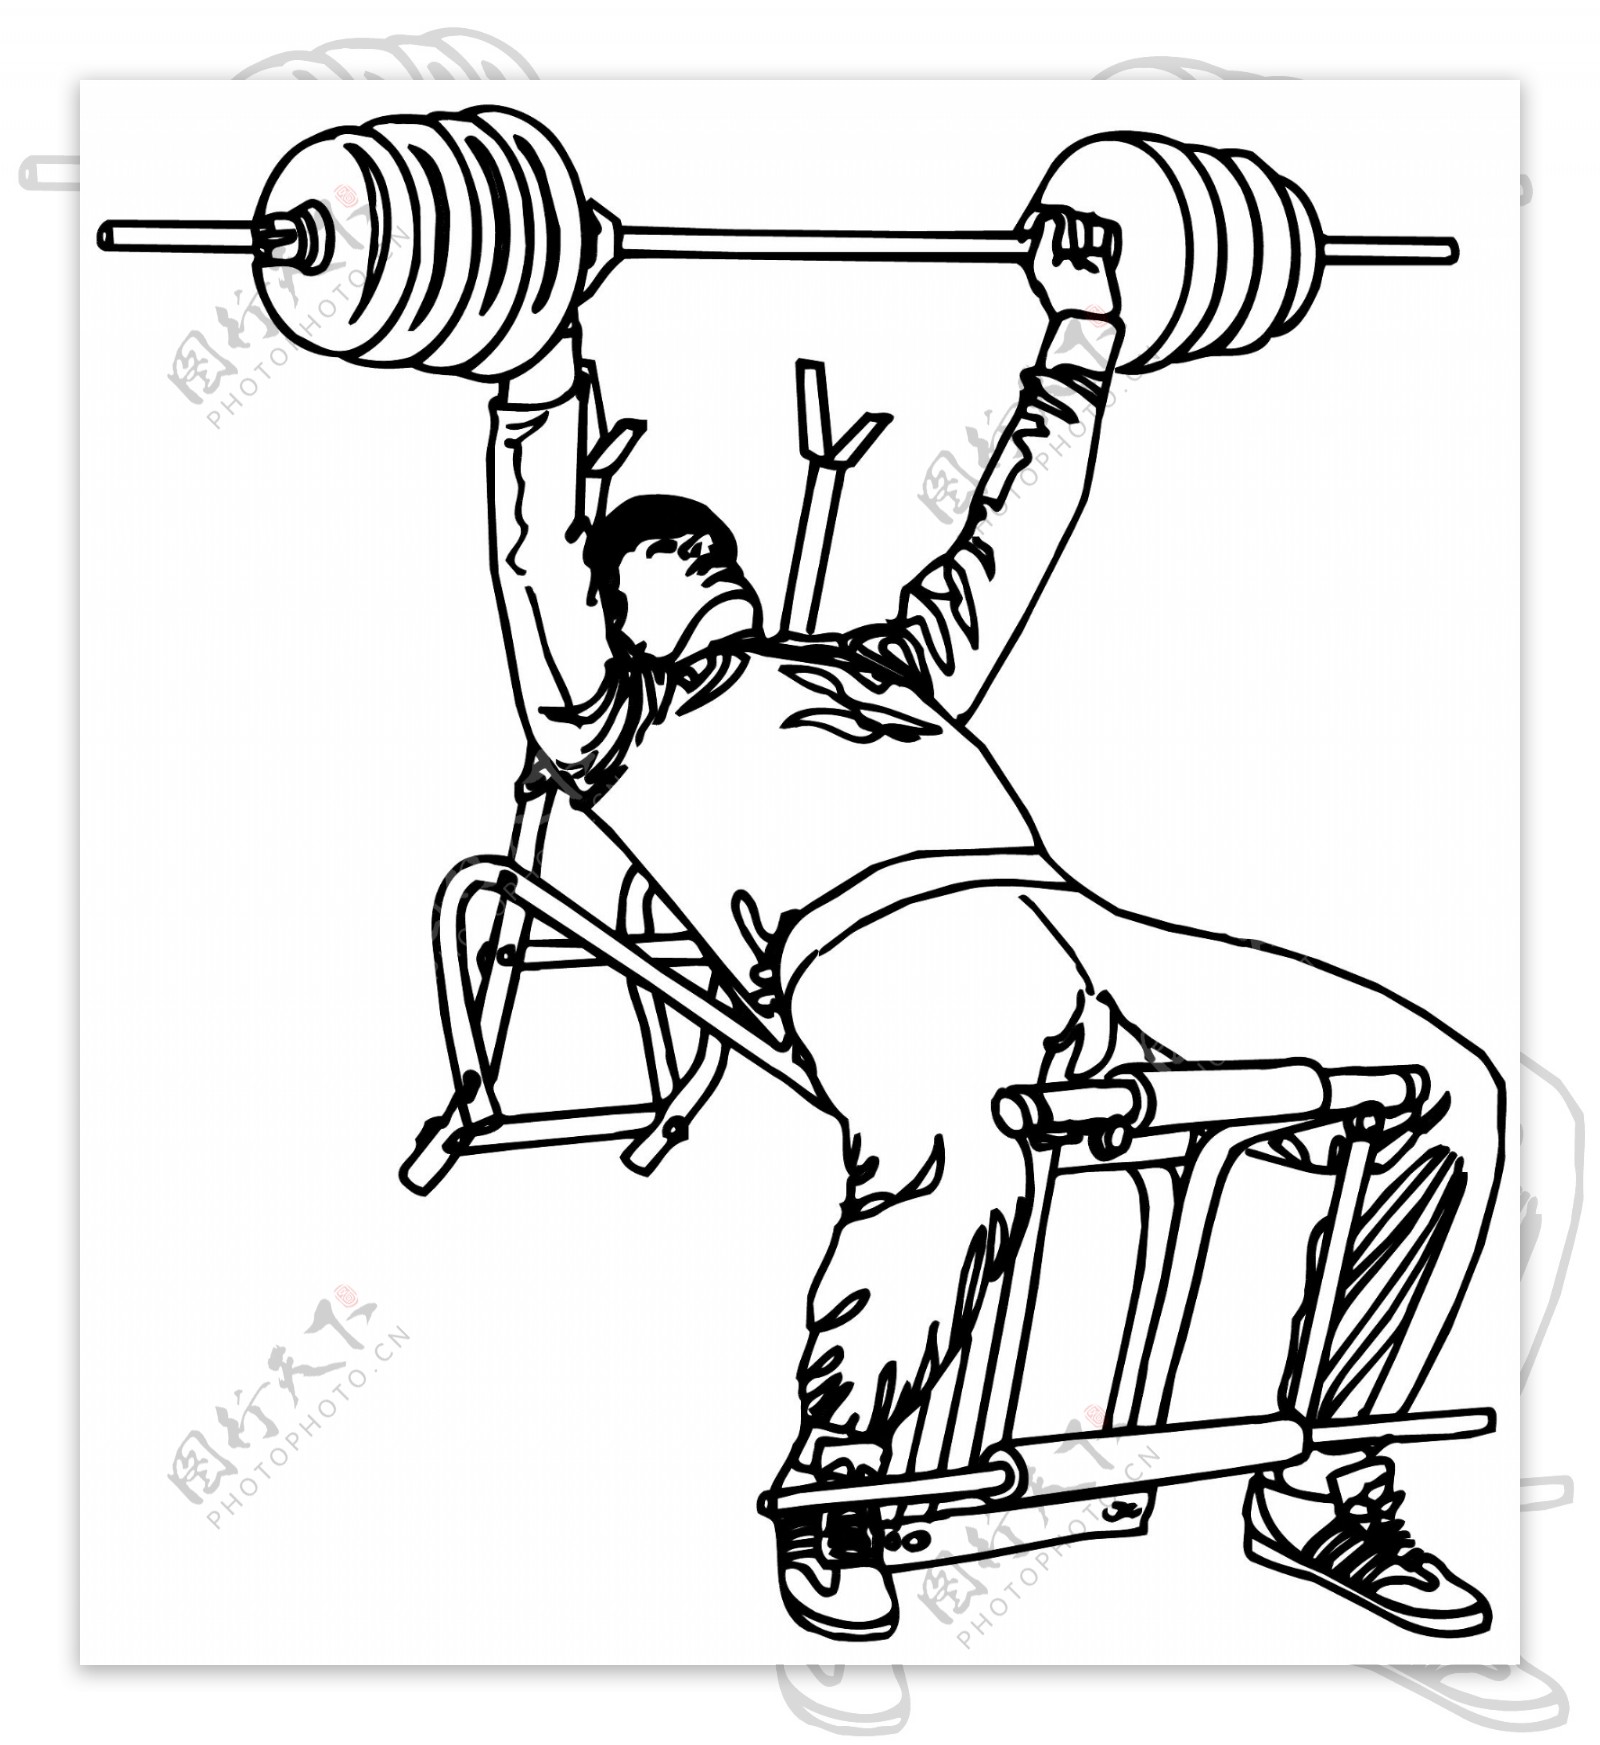 健身运动运动人物矢量素材EPS格式0287